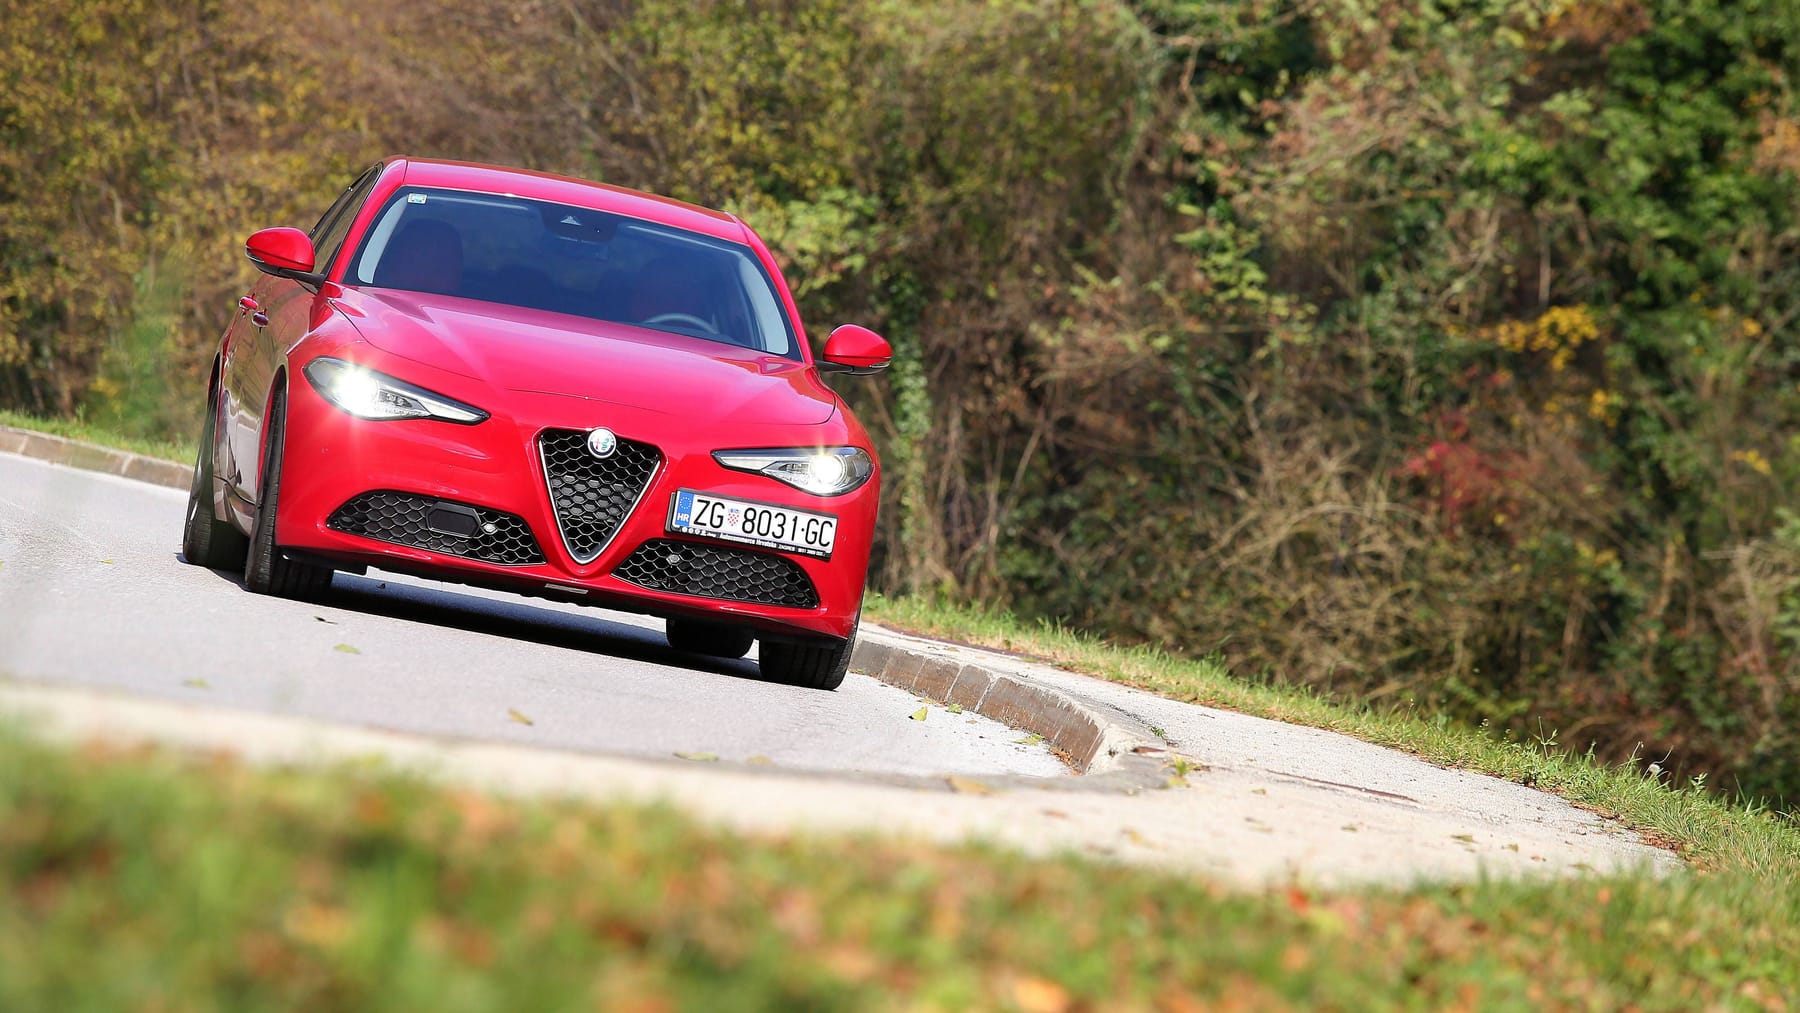 Alfa Romeo sedán deportivo ahora por menos de 300 euros en alquiler